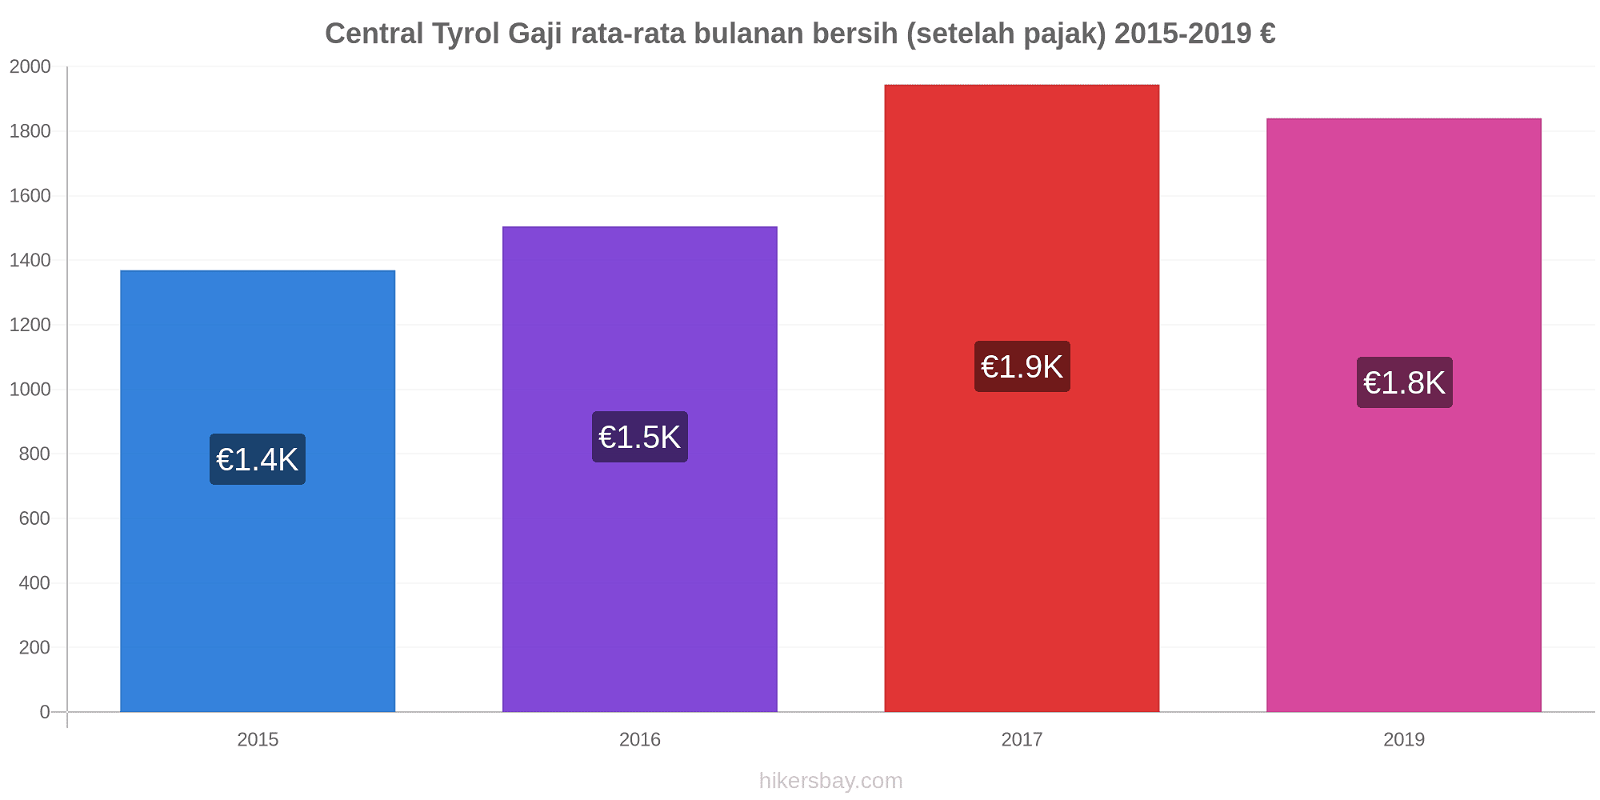 Central Tyrol perubahan harga Gaji rata-rata bulanan bersih (setelah pajak) hikersbay.com